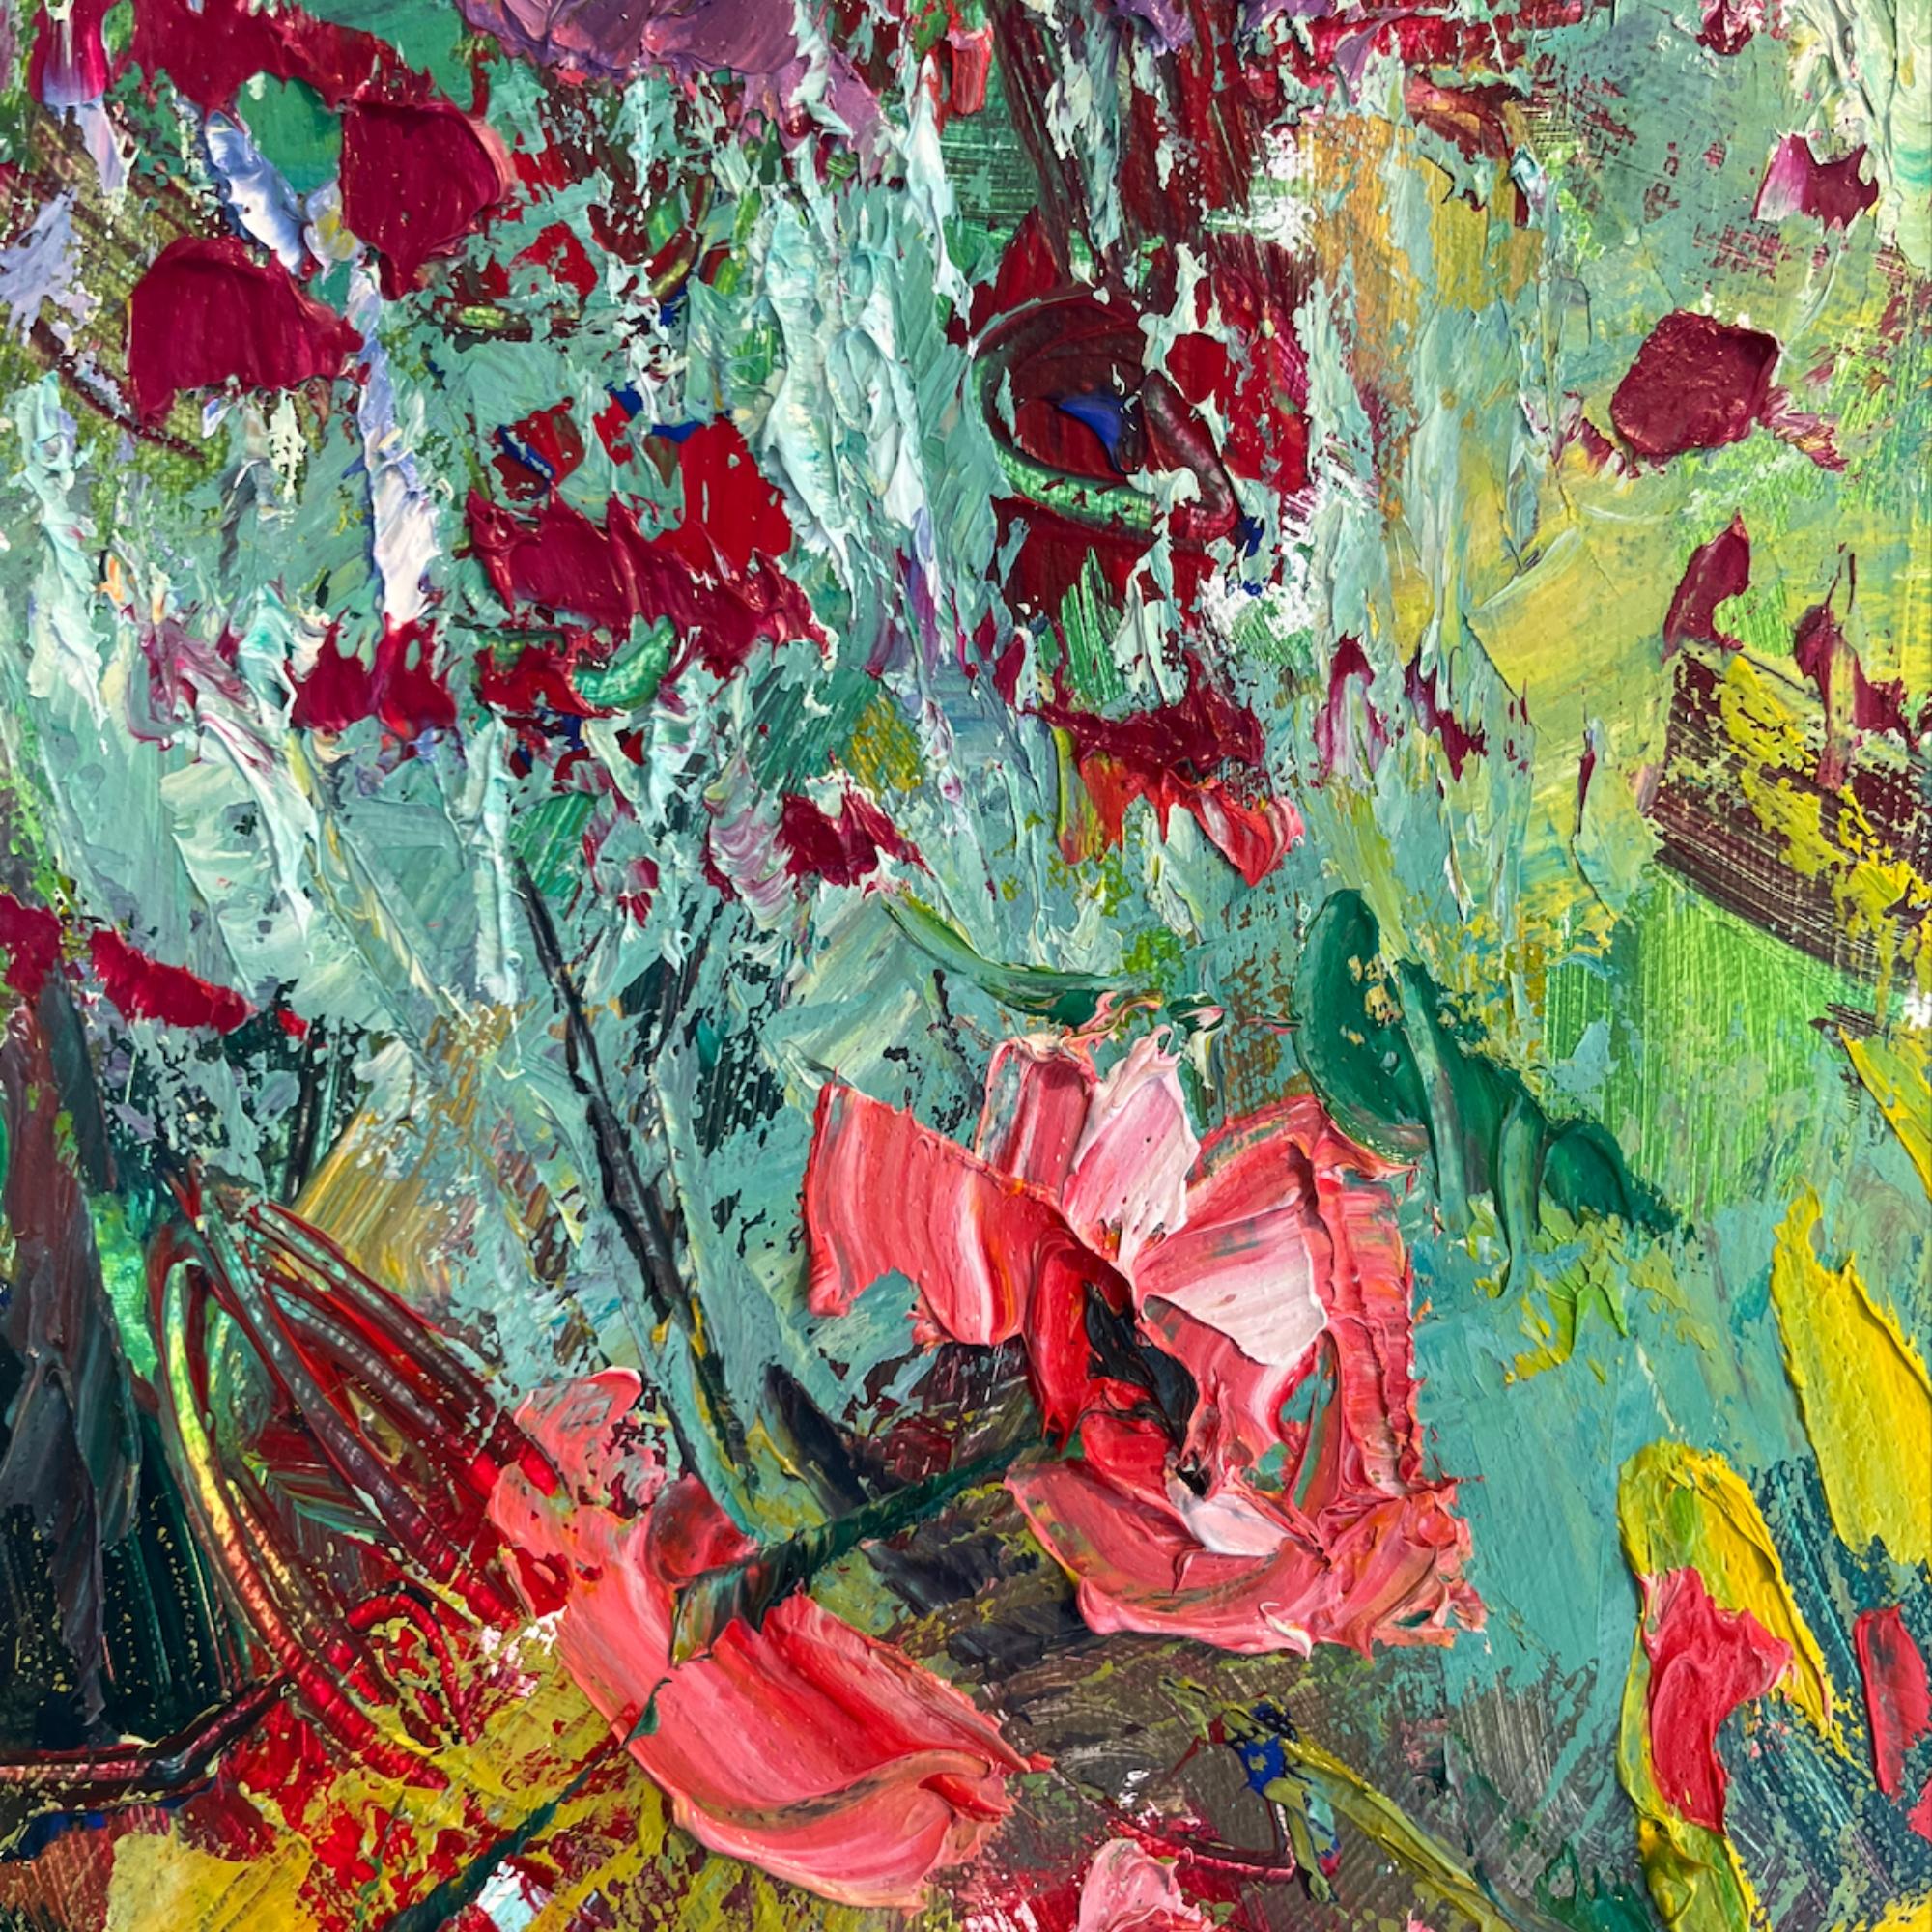 Rosa Mohnblumen im Garten - original abstraktes stillleben-zeitgenössisches gemälde (Abstrakter Impressionismus), Painting, von Sylvia Paul